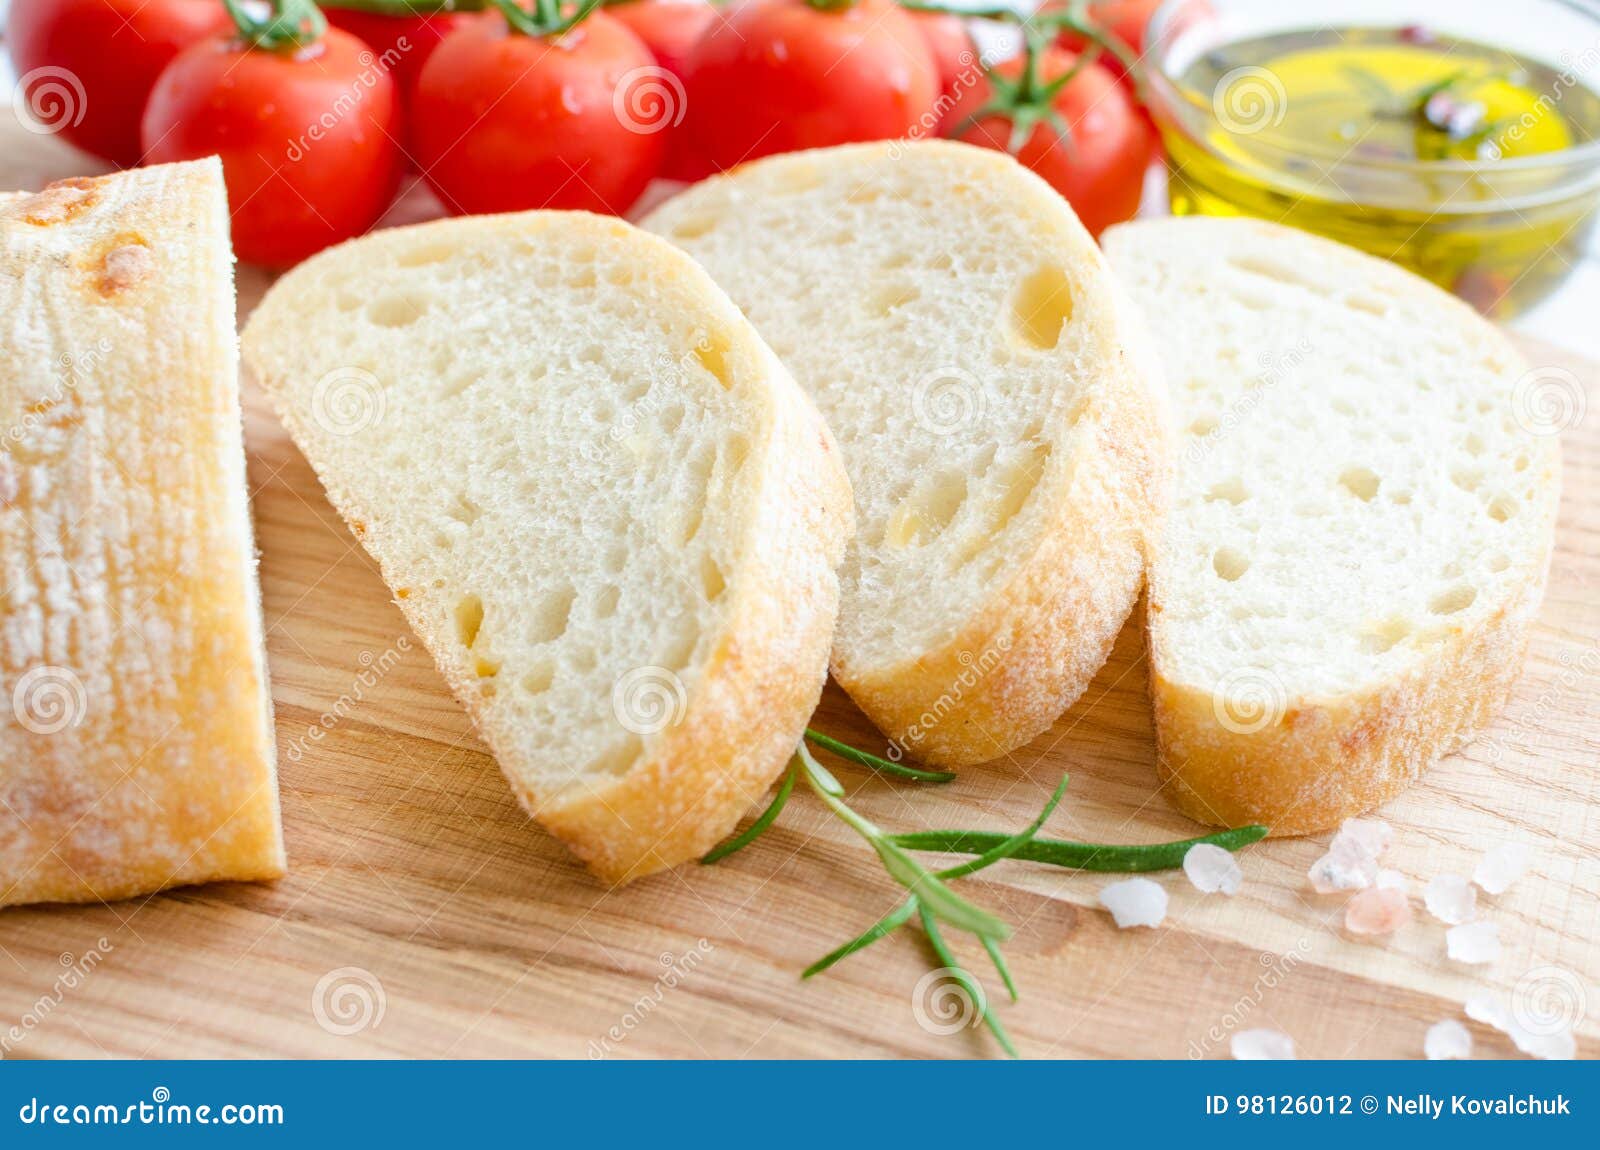 Ιταλικό ψωμί ciabatta. Τεμαχισμένο πρόσφατα ψημένο ψωμί ciabatta στον ξύλινο τέμνοντα πίνακα στον άσπρο αγροτικό πίνακα με το δεντρολίβανο, το άλας, τις ντομάτες και το ελαιόλαδο Ιταλική έννοια τροφίμων